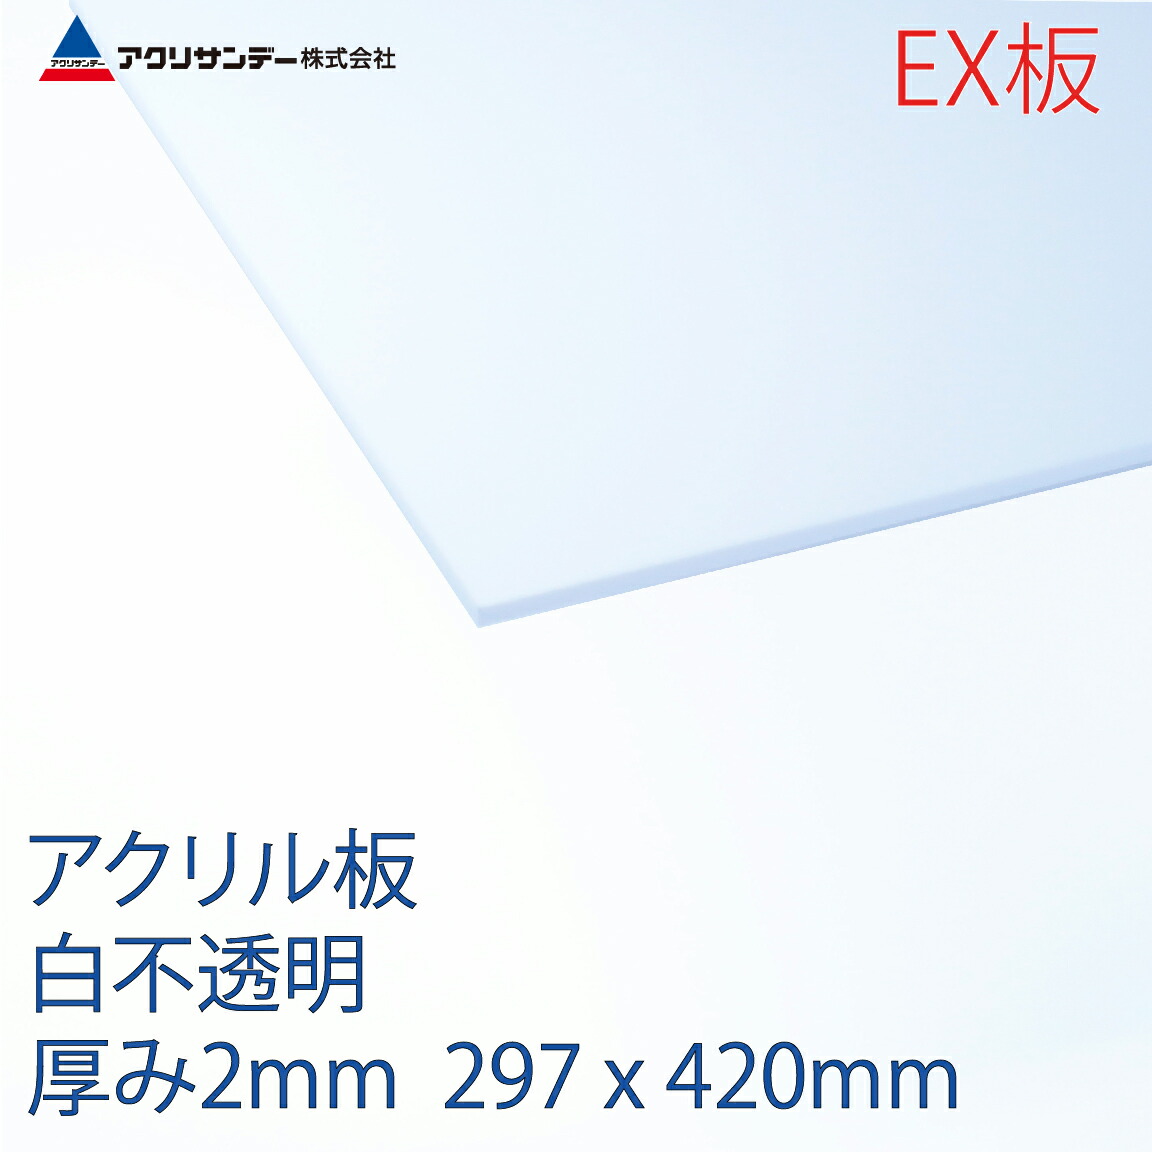 アクリサンデーEX板 アクリル 白(EX402) 不透明 厚み2mm A3サイズ 297×420mm 押出グレード 連続キャスト製法  プラスチック 色板 DIY アクリサンデー